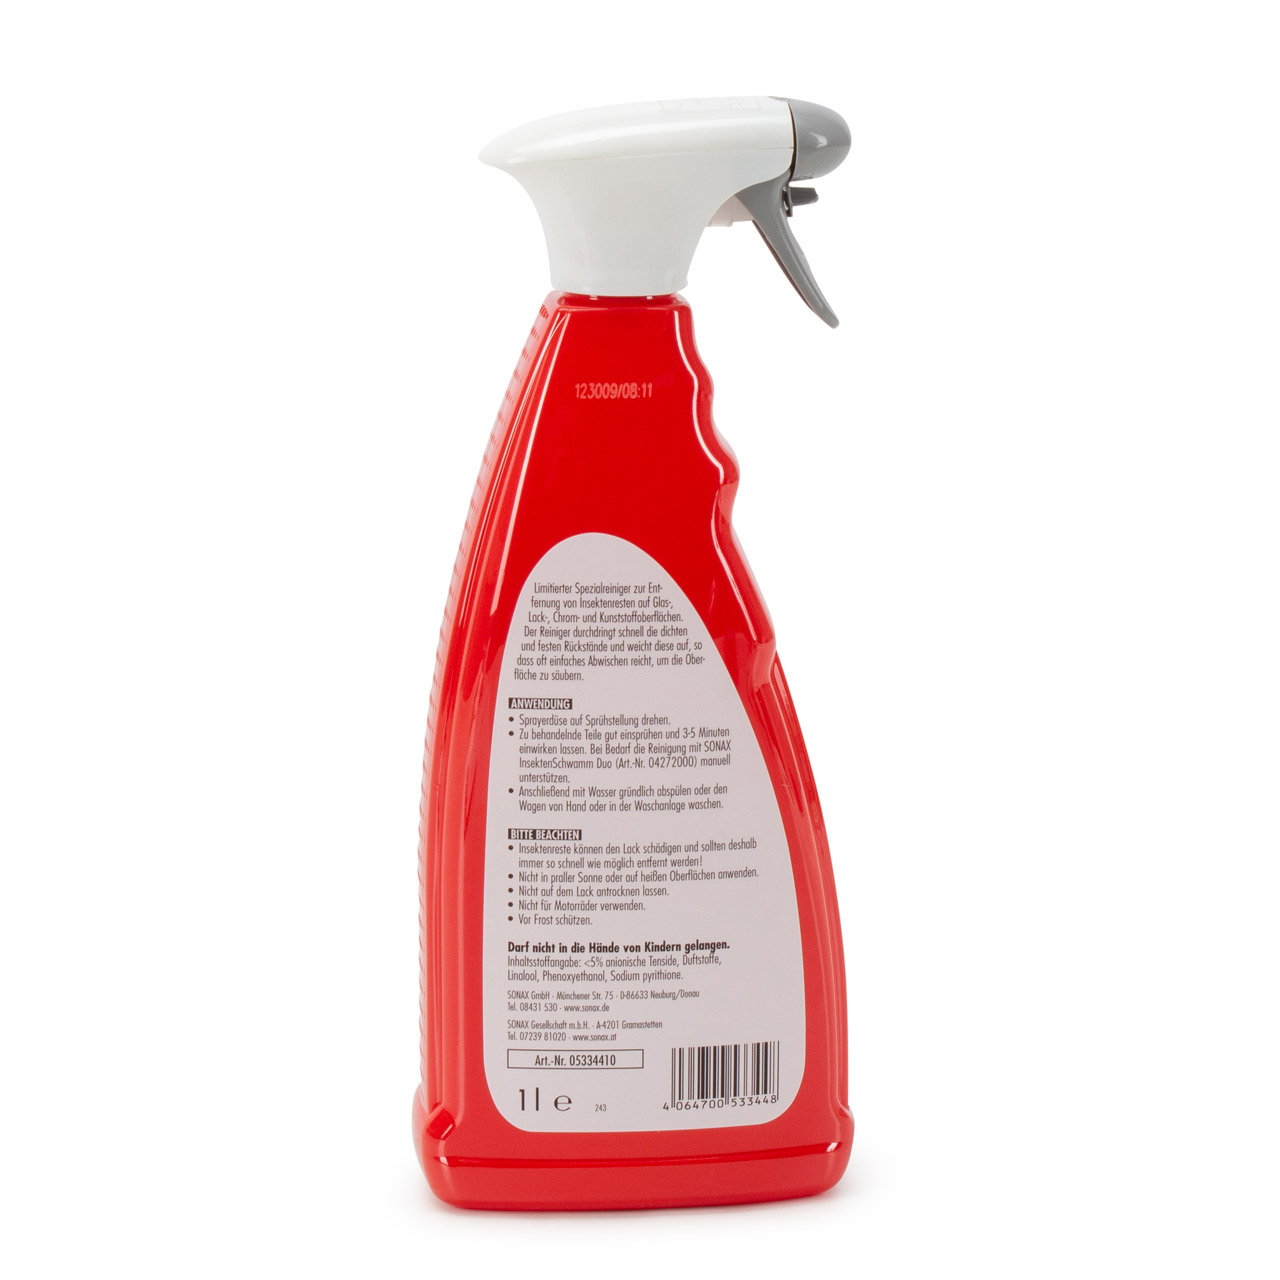 SONAX 05334410 Insektenentferner Reiniger Spezialreiniger Spray Limited Edition 1L 1 Liter